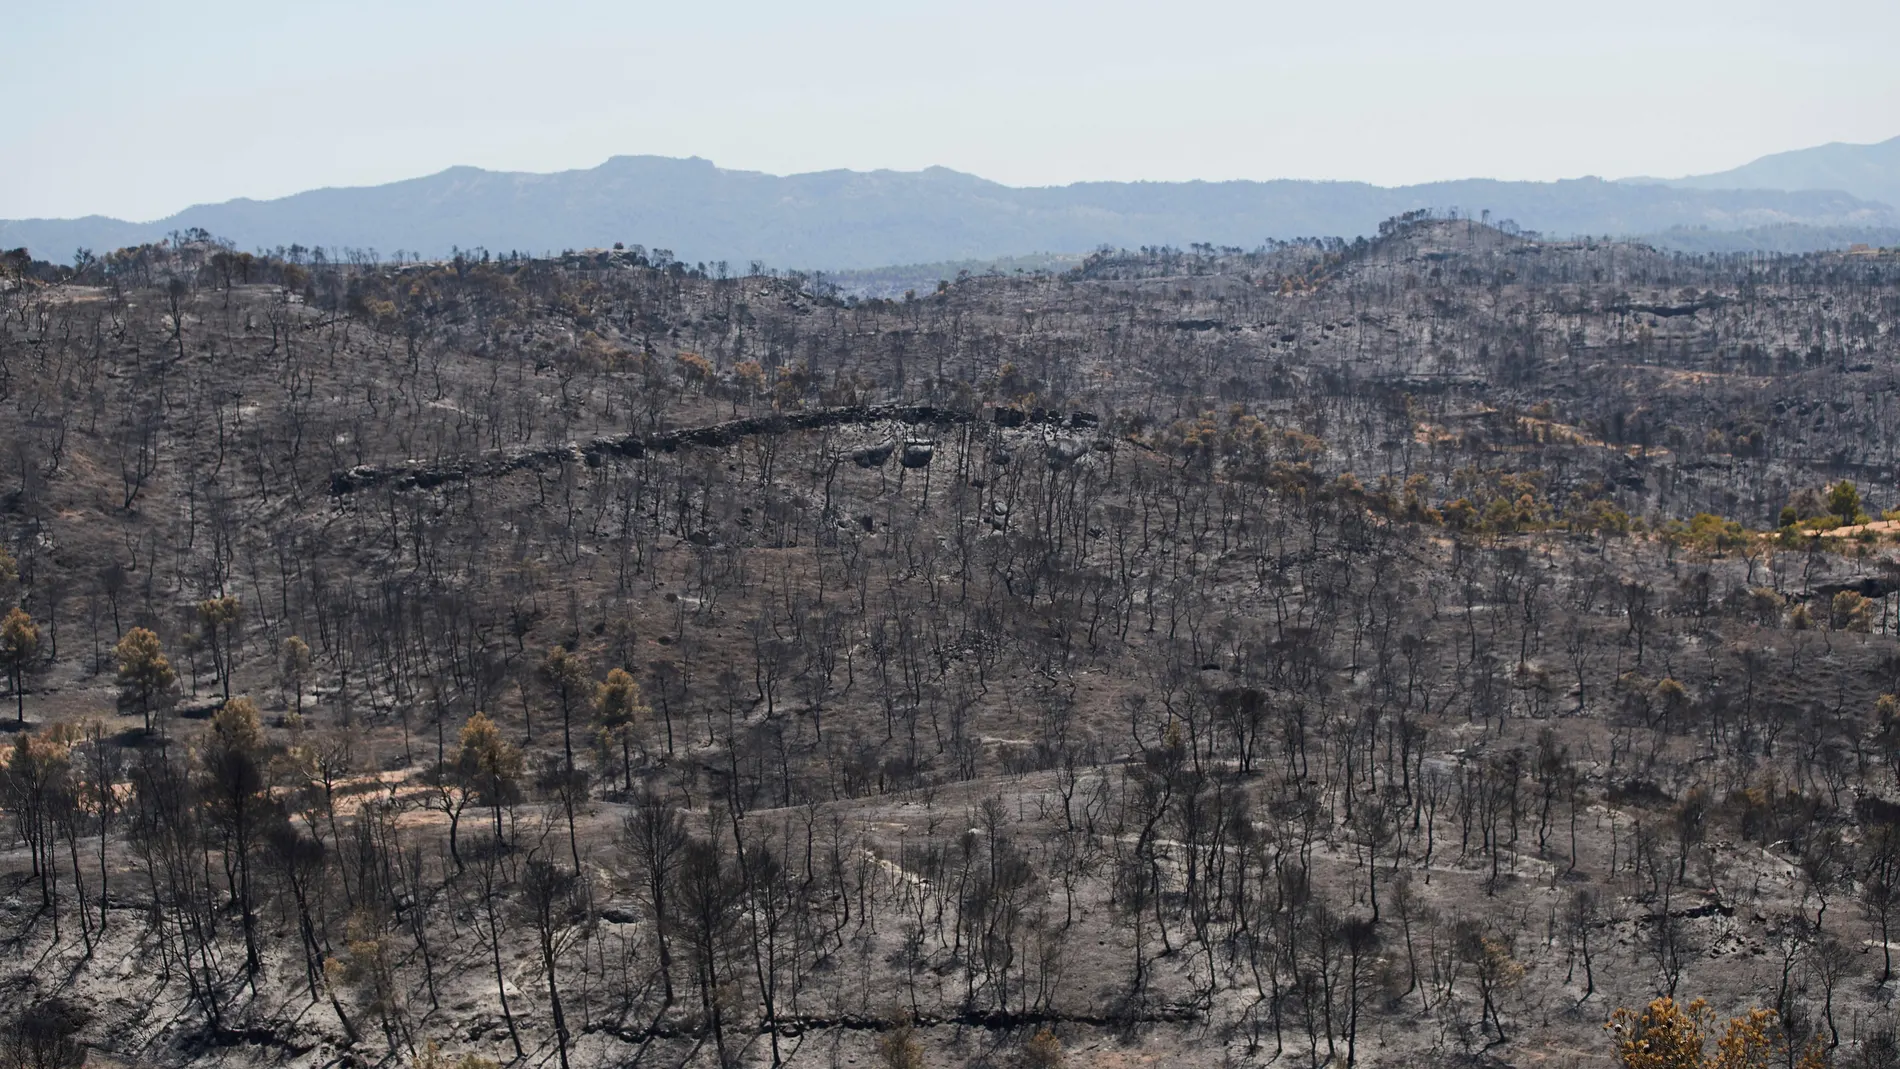 Vista del terreno calcinado este sábado tras el paso del incendio forestal de Tarragona